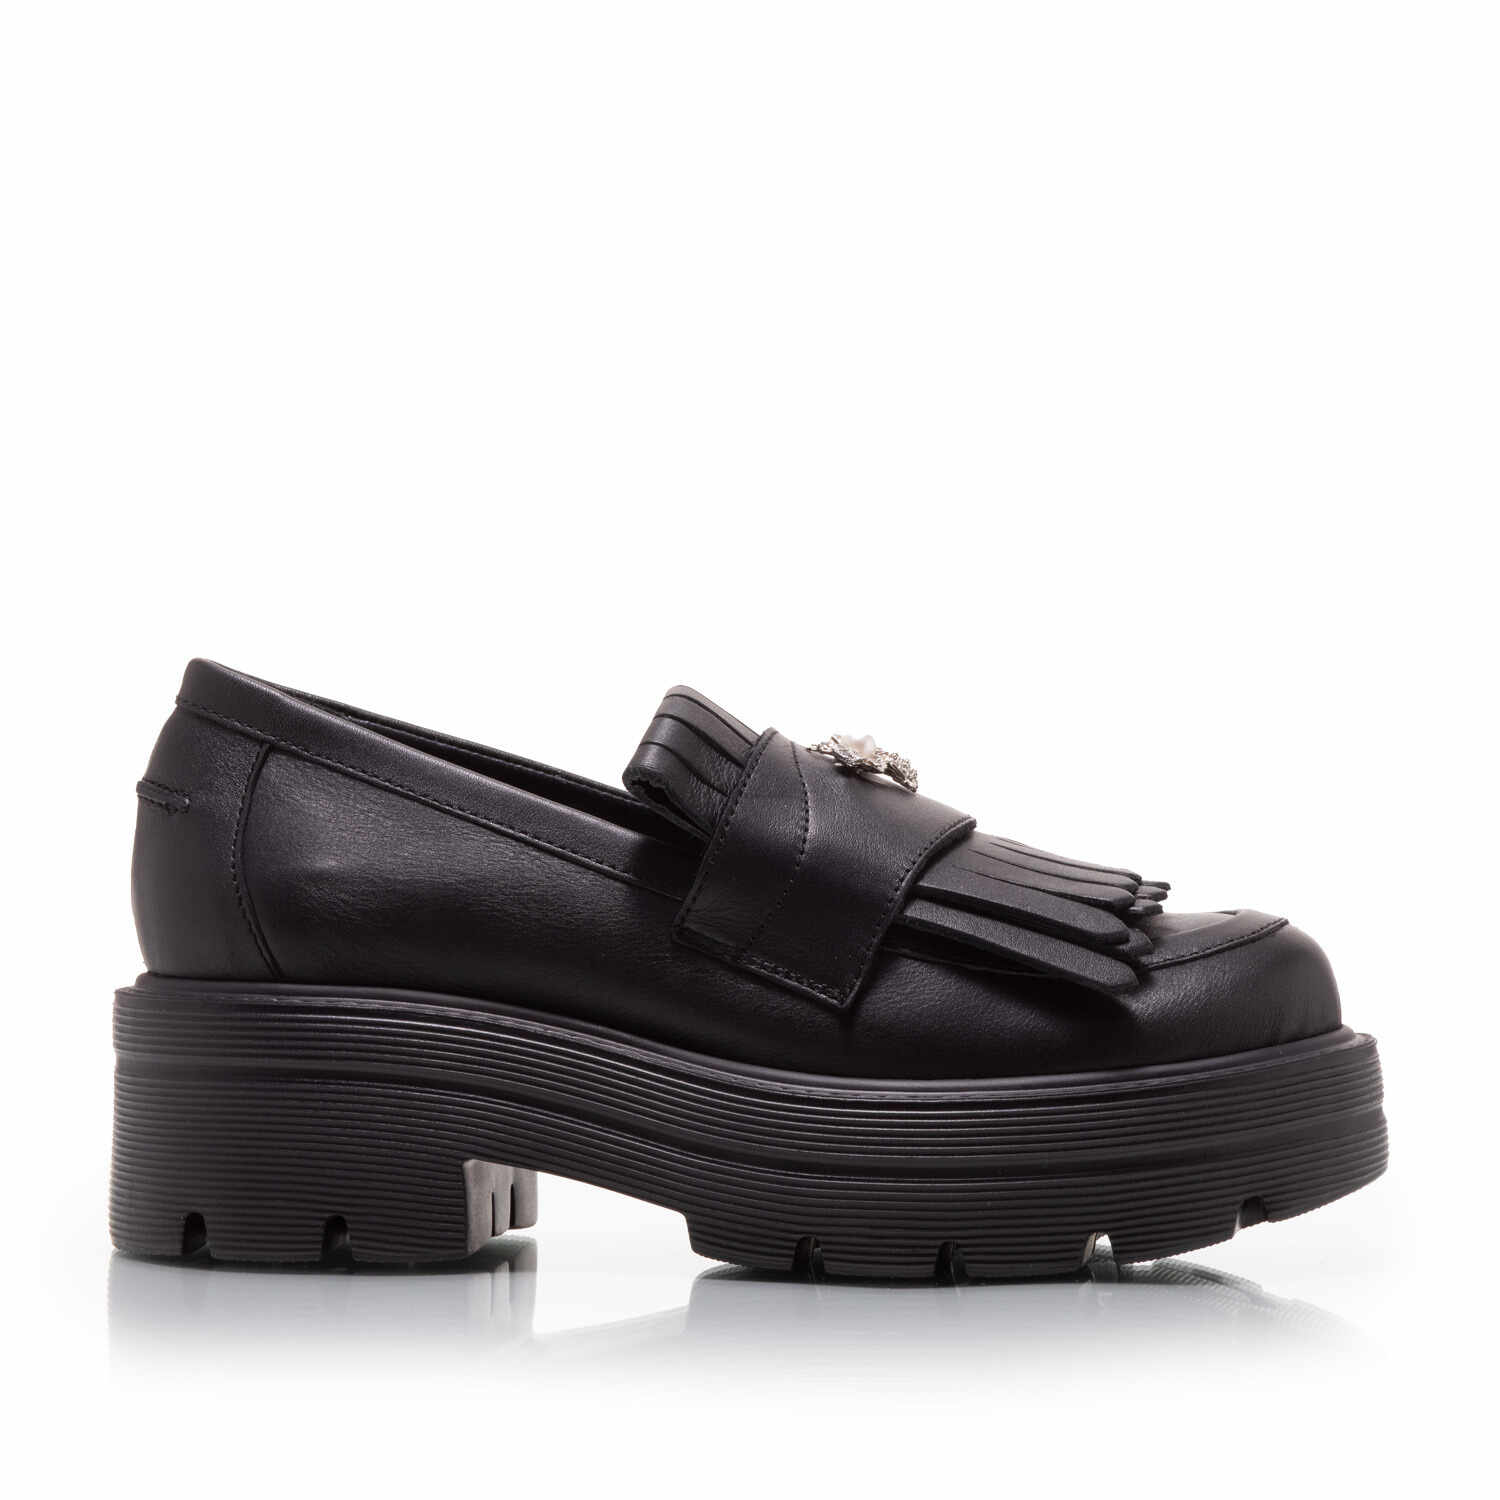 Pantofi casual damă din piele naturală, Leofex - 405 Negru Box